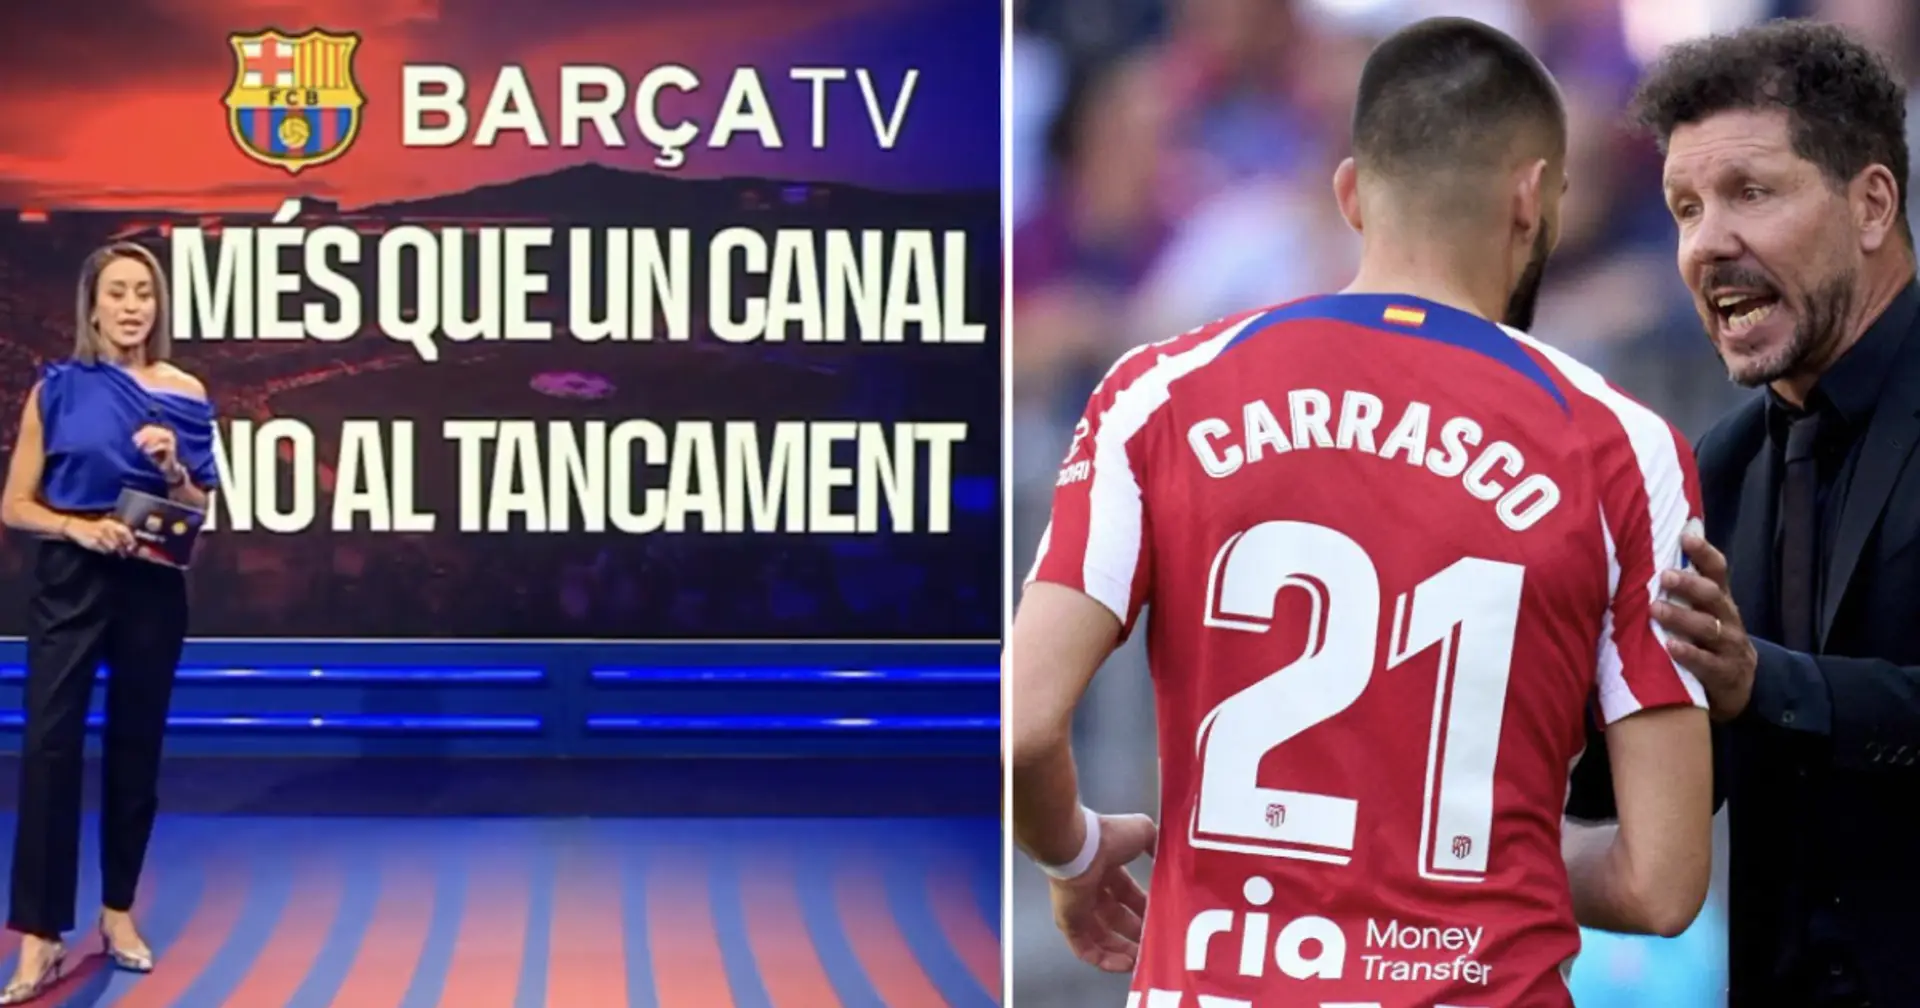 Le Barça TV s'arrête après 24 ans et 2 autres actus sous-radar du jour